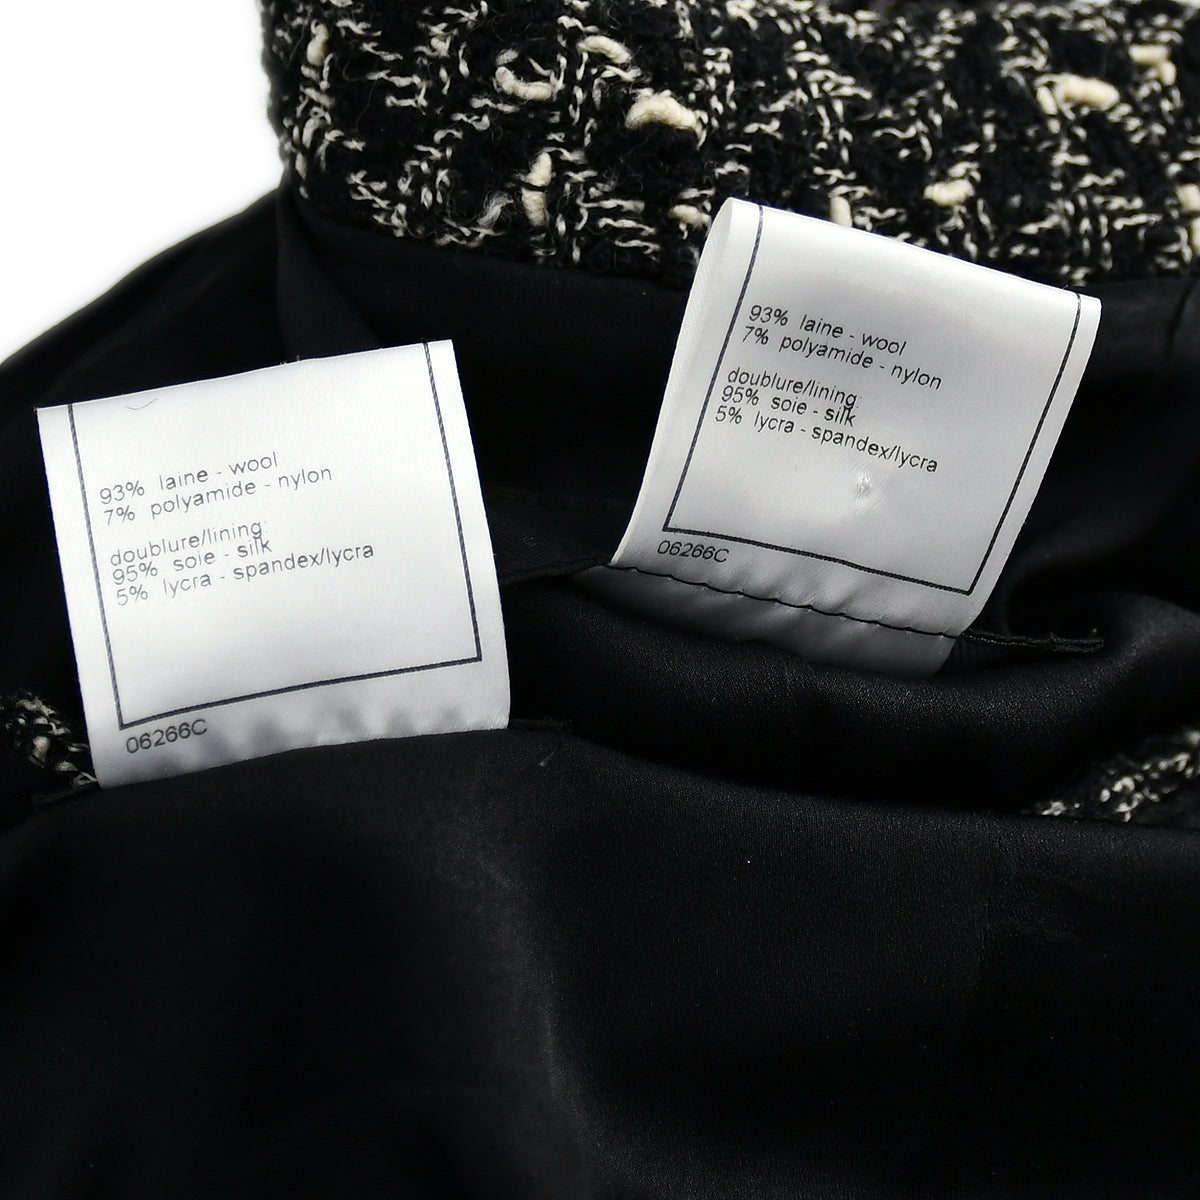 Chanel Setup Suit Jacket Skirt Black 97A 